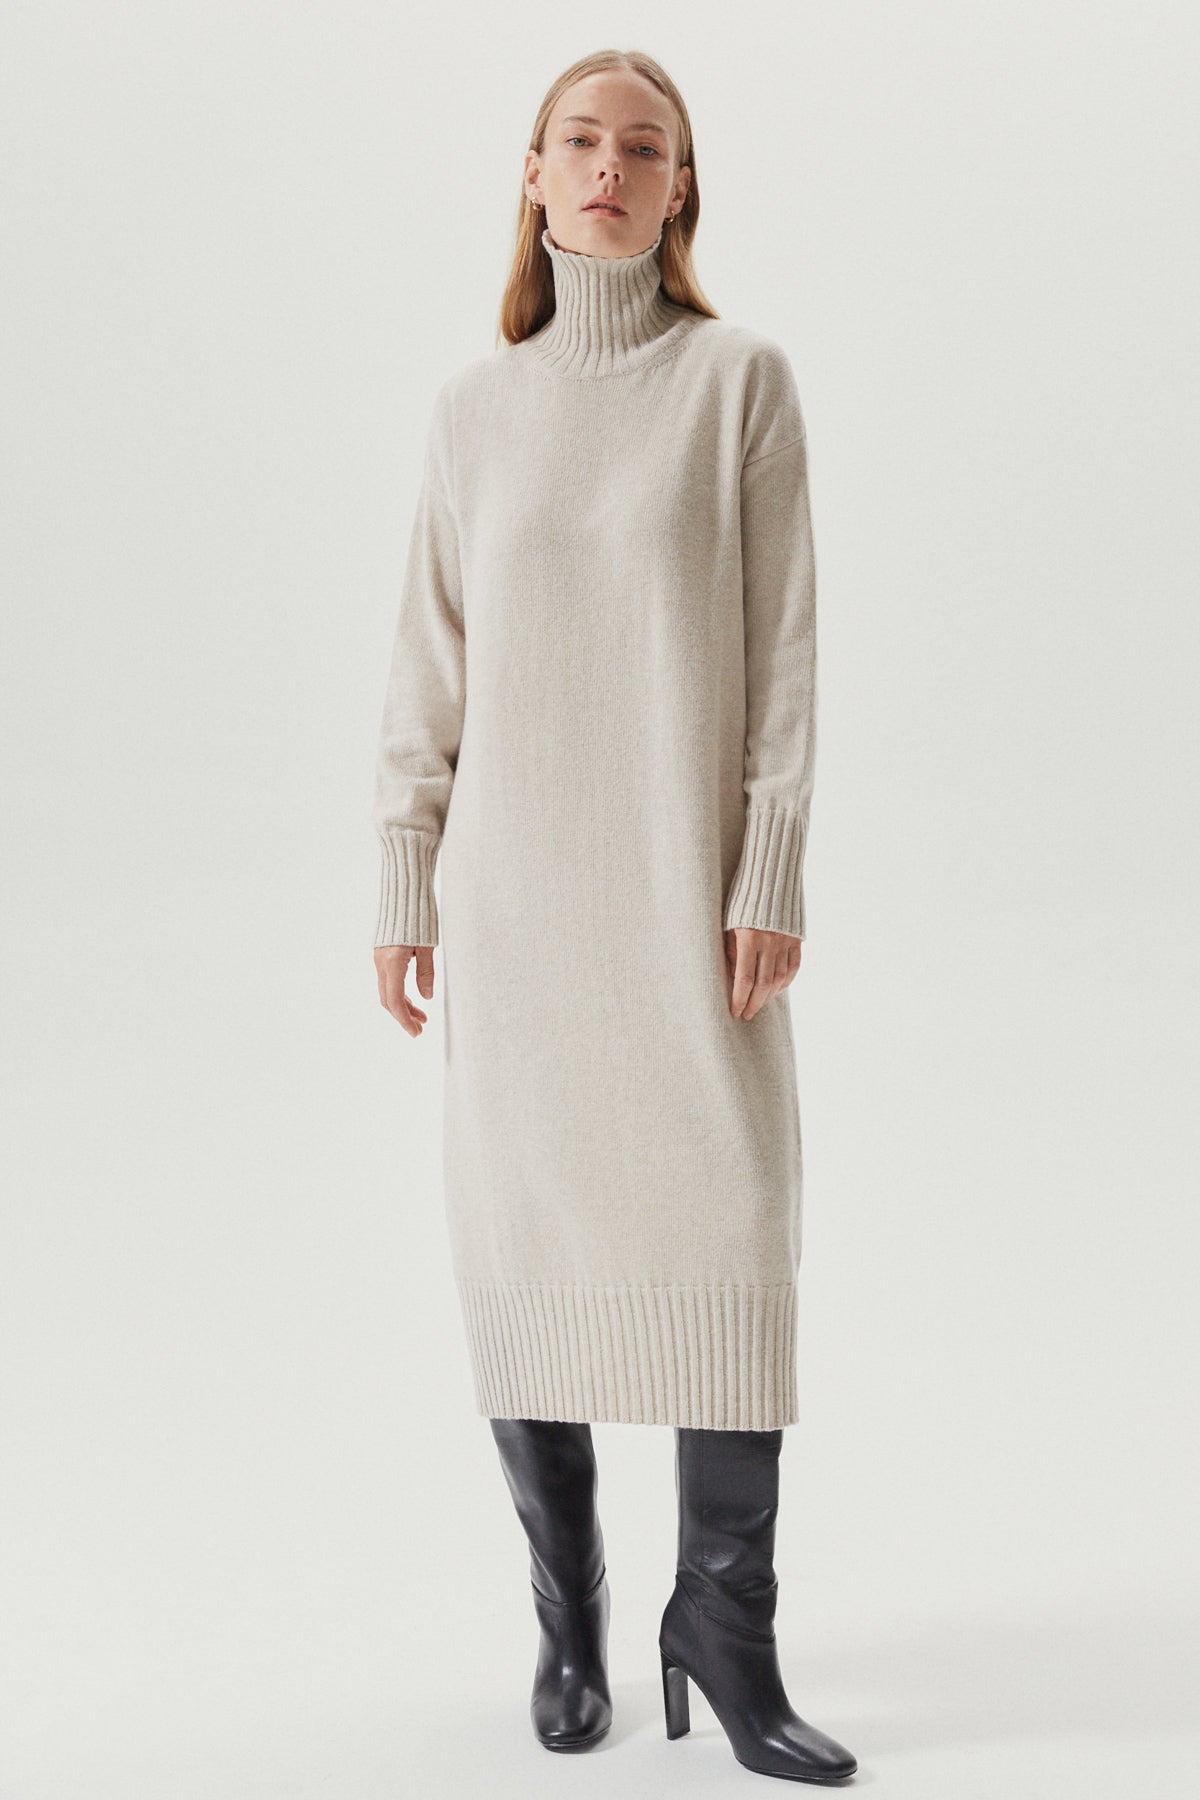 the woolen oversize dress ecru